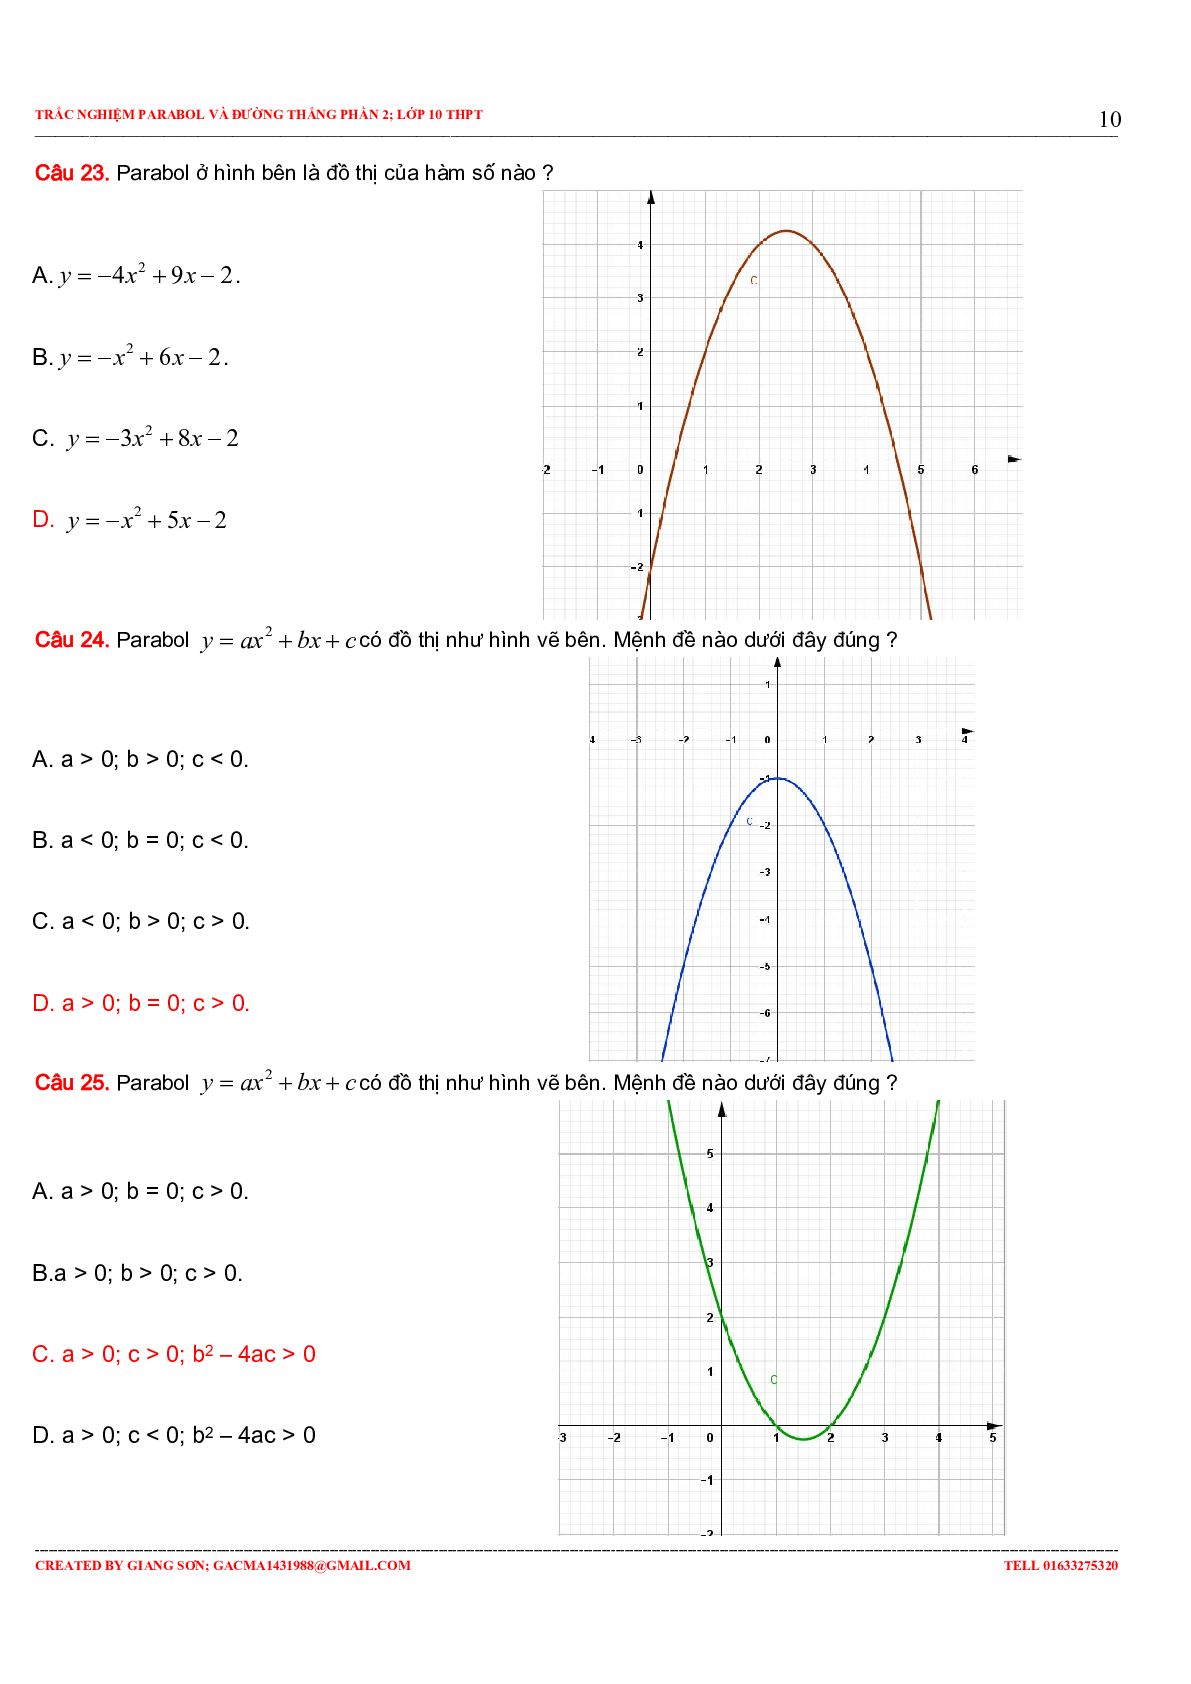 97 Bài tập trắc nghiệm Parabol và đường thẳng phần 2 (trang 10)